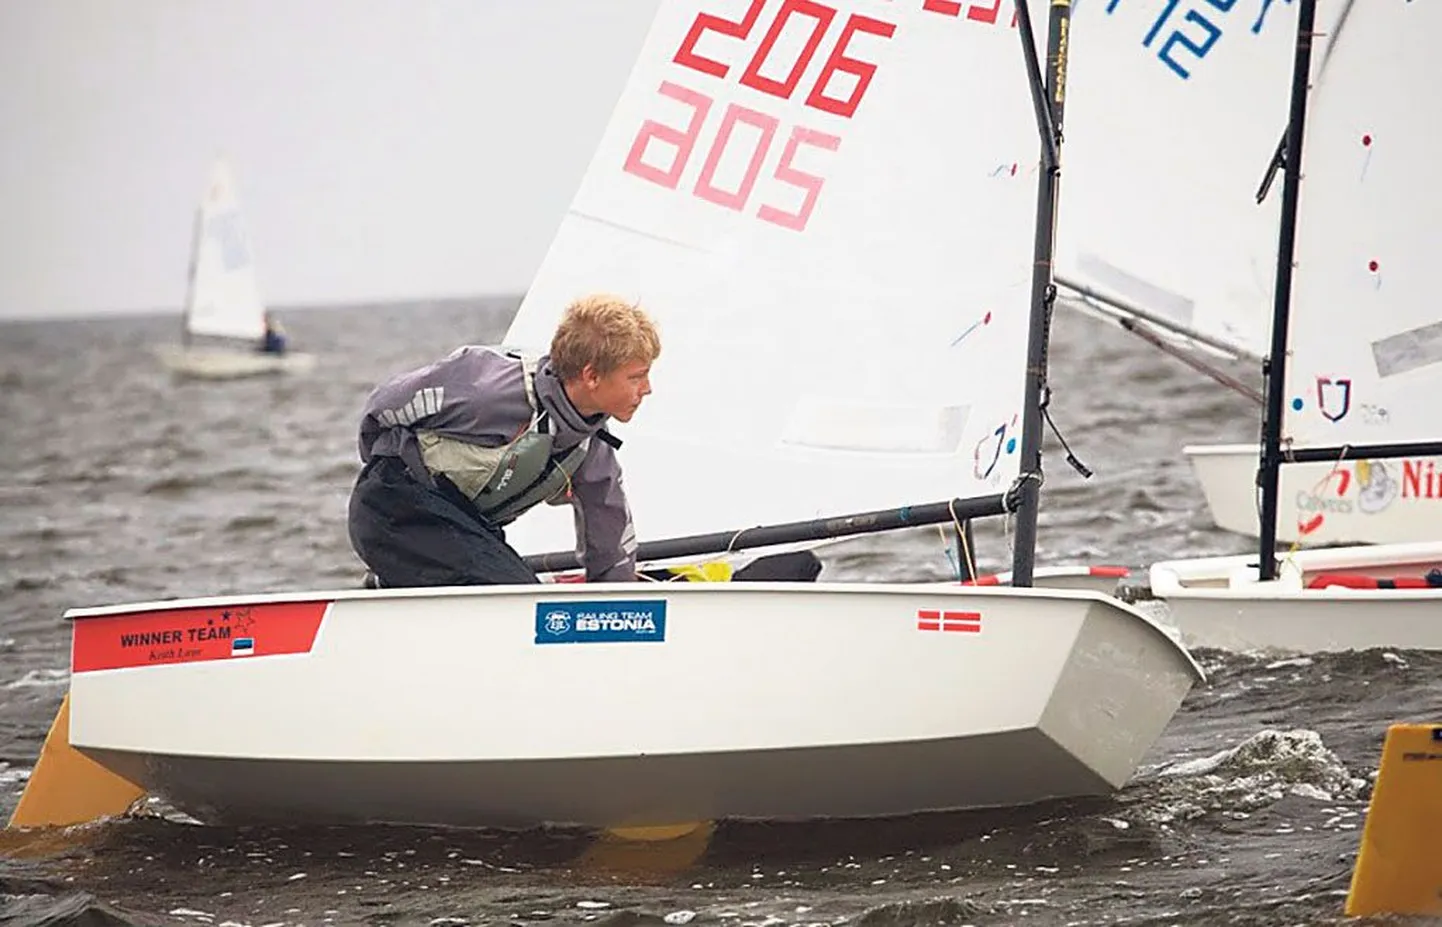 Pärnu jahtklubi purjespordikooli treenerite kasvandik, 13aastane Keith Luur tõestas taas, et tal pole kodustel vetel väärilisi vastaseid.